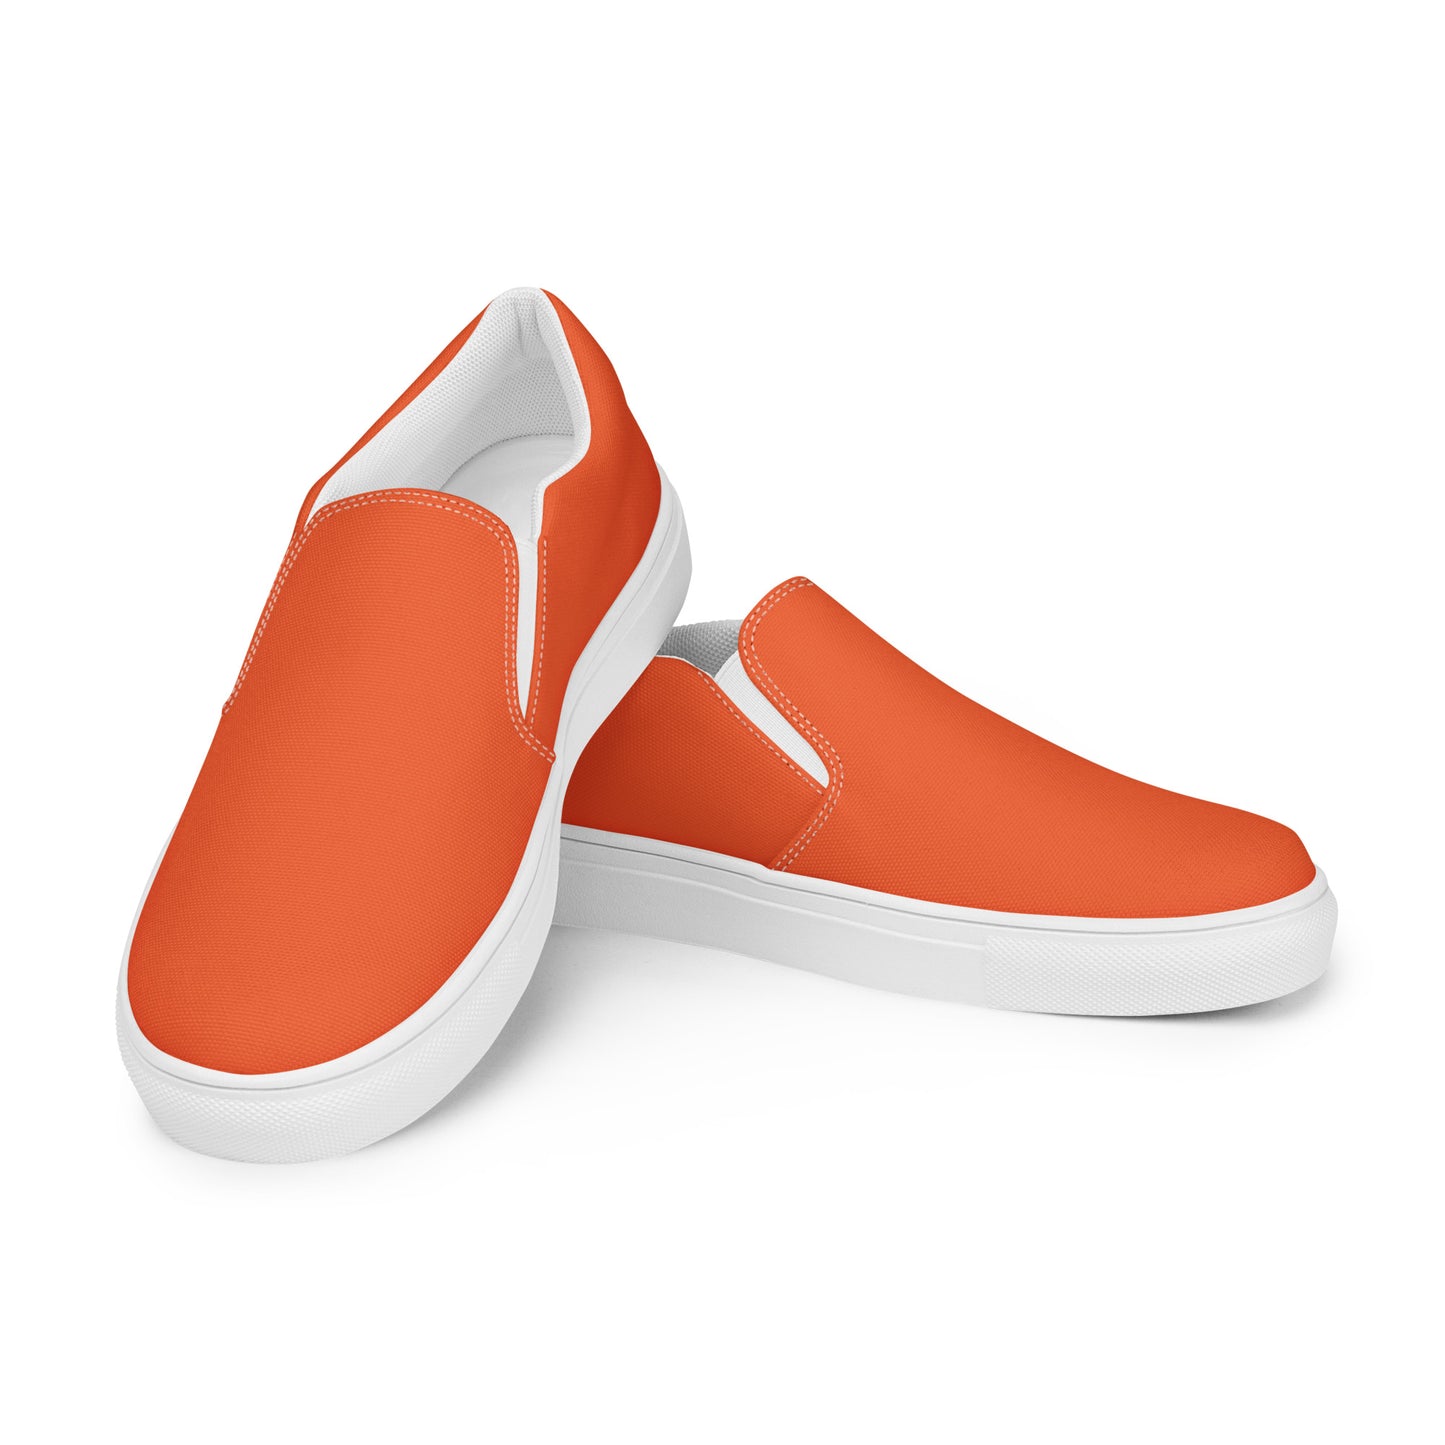 Basic Orange - Sustainably Made Men's Slip-On Canvas Shoes